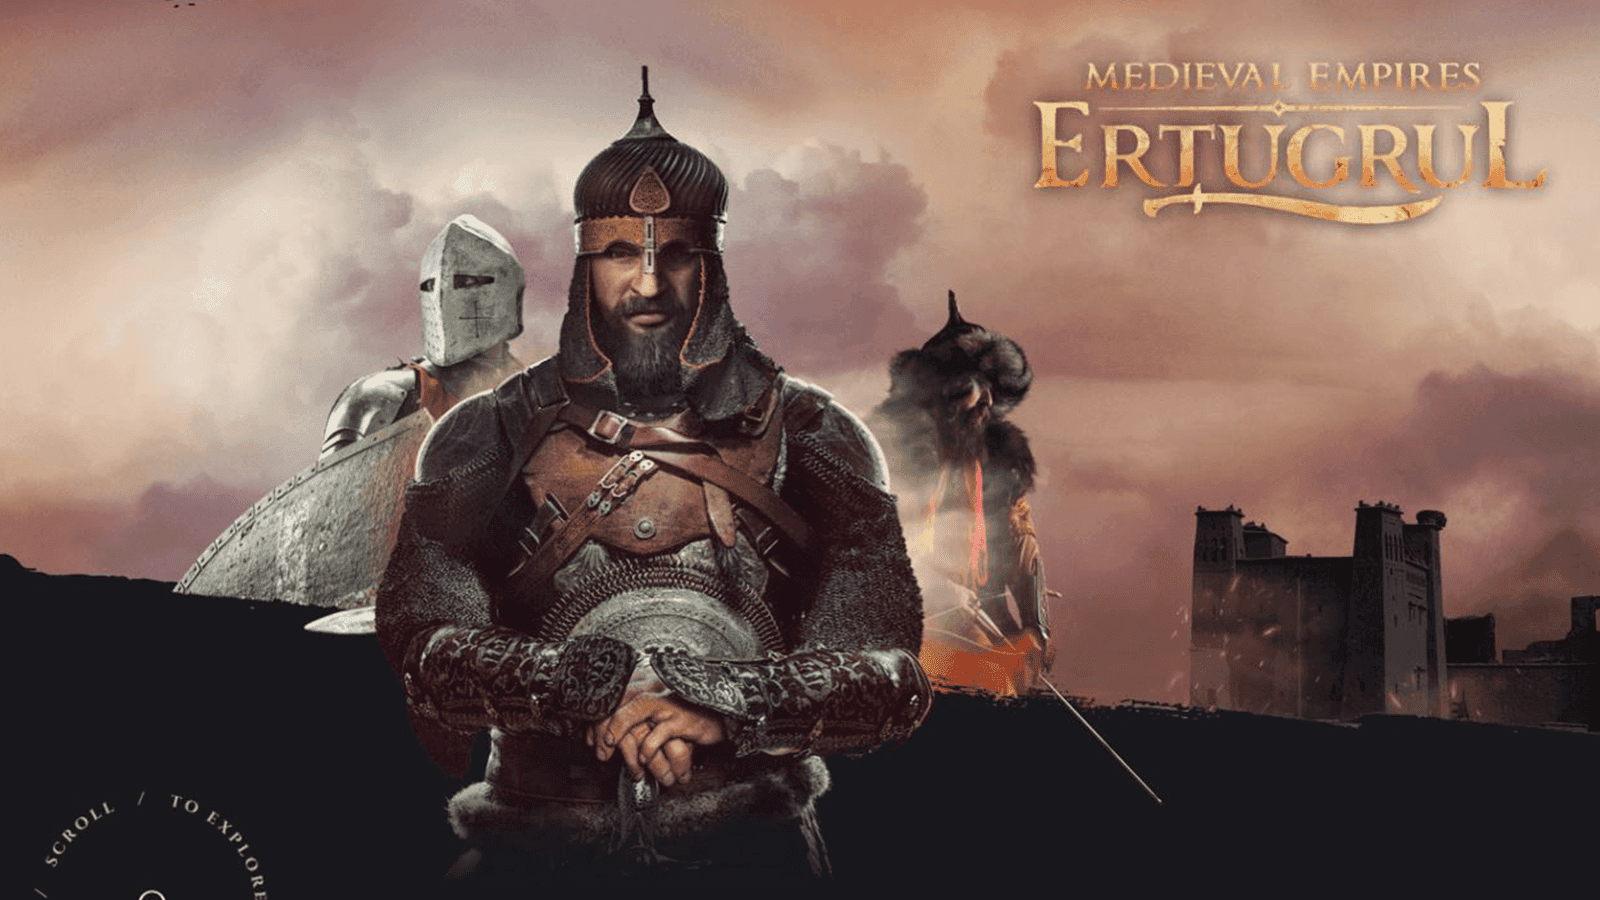 मध्यकालीन साम्राज्य: एर्टुगरुल - गेम समीक्षा